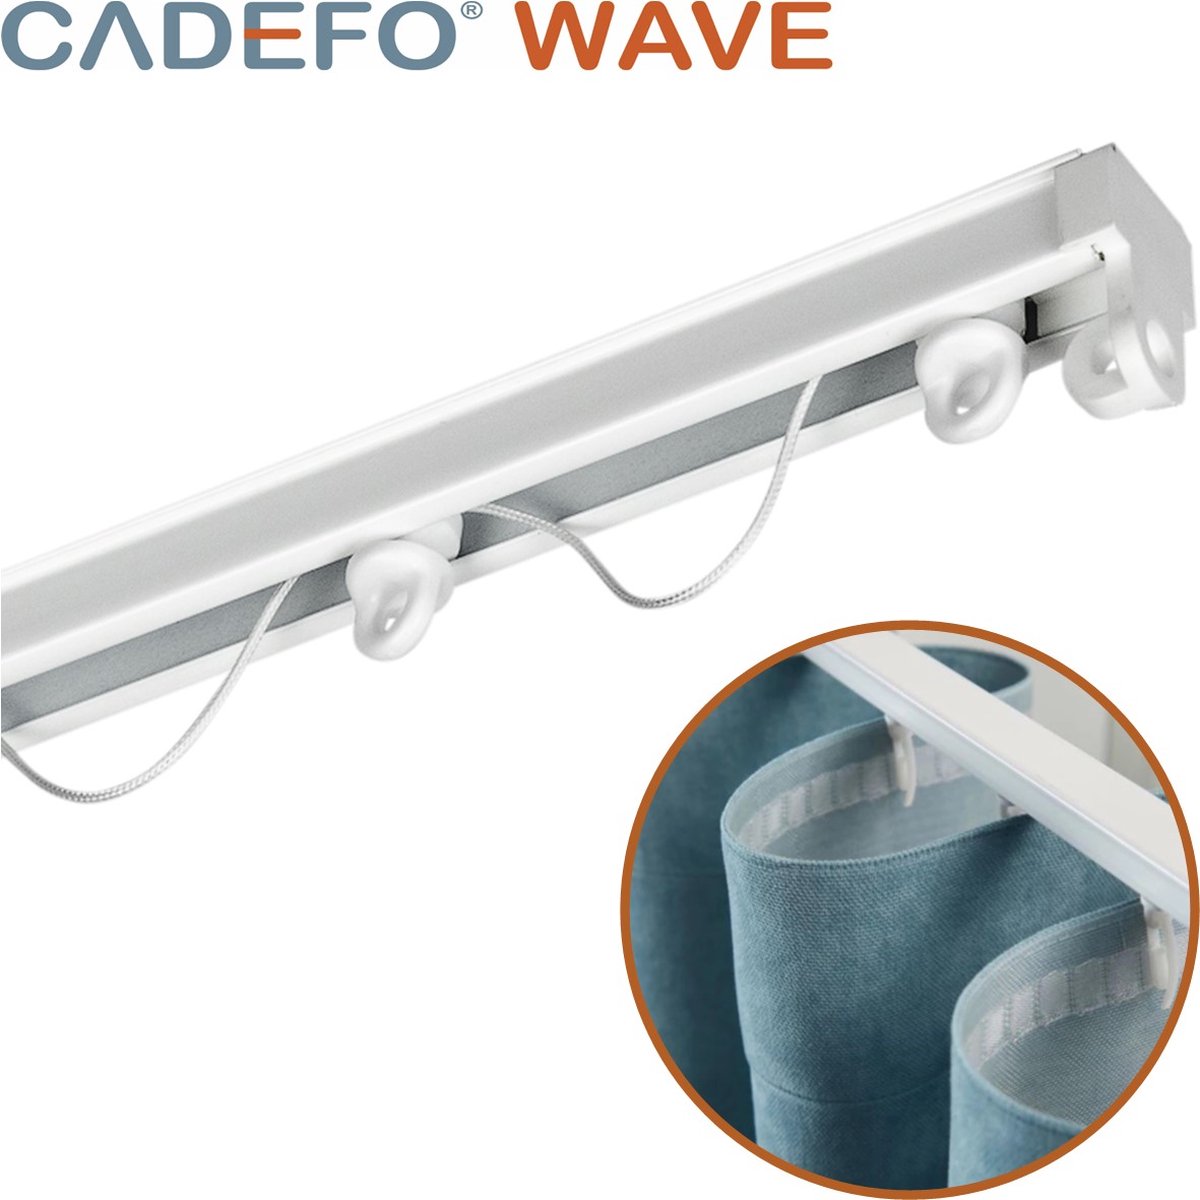 CADEFO WAVE (401 - 450 cm) Gordijnrails - Compleet op maat! - UIT 1 STUK - Leverbaar tot 6 meter - Plafondbevestiging - Lengte 413 cm